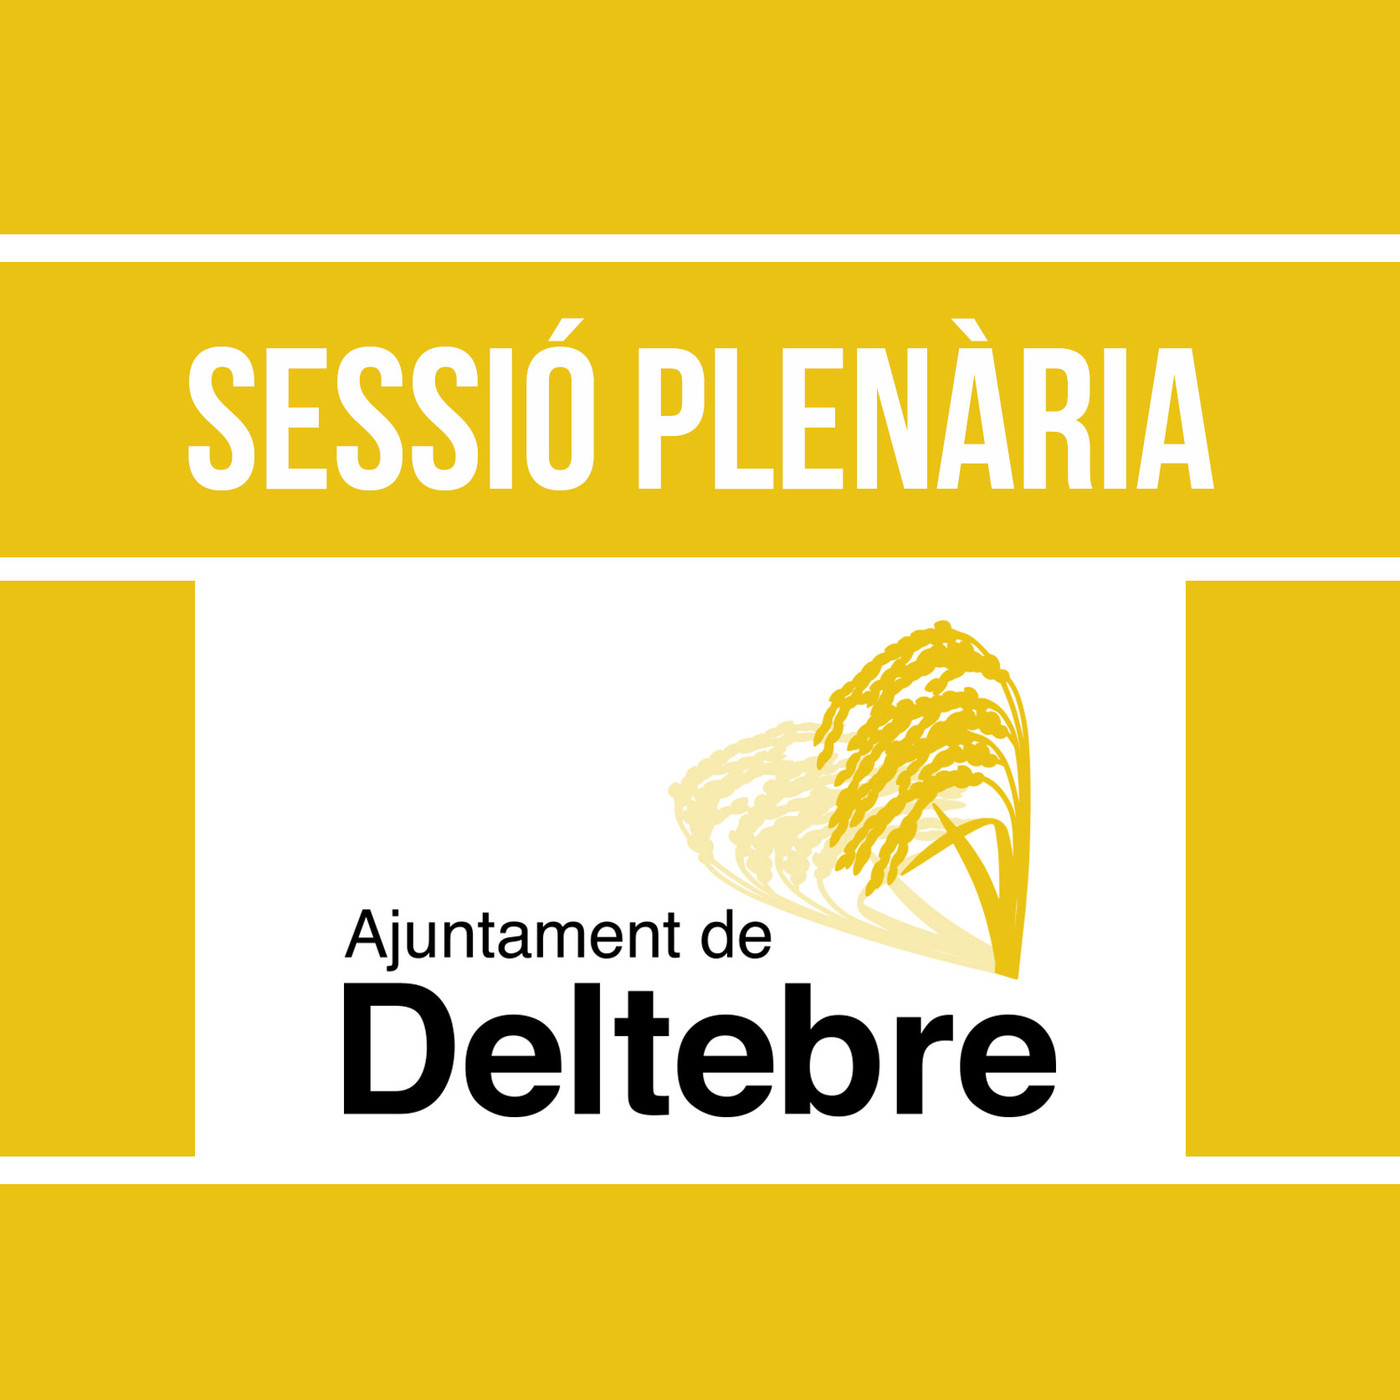 Sessió Plenària - Ajuntament de Deltebre